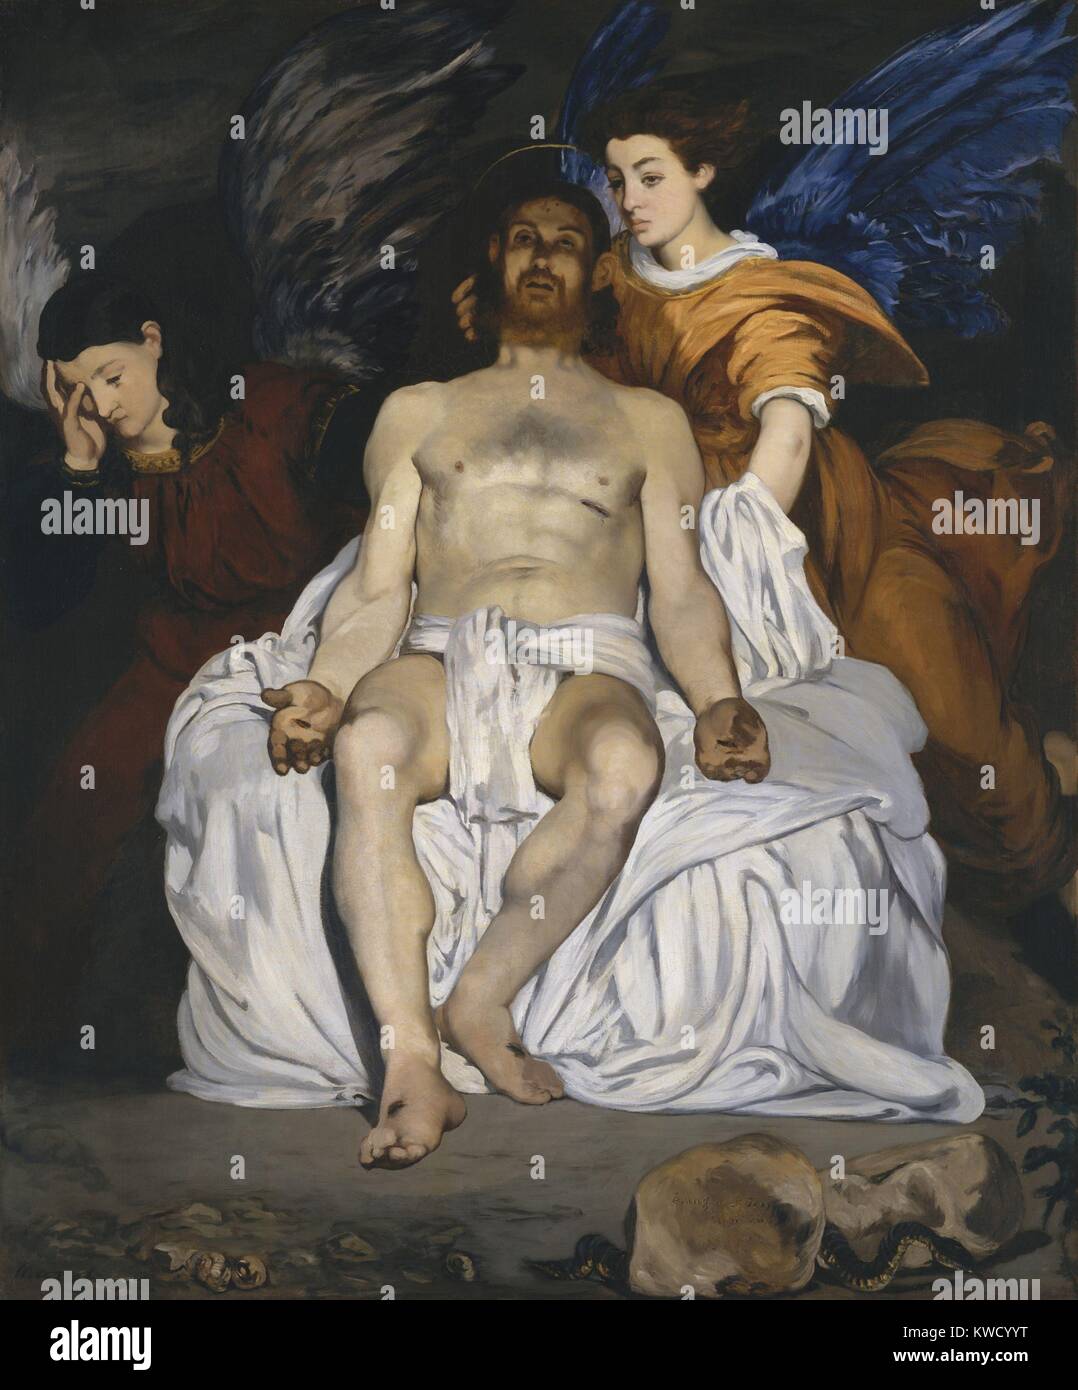 Le Christ mort avec des anges, par Edouard Manet, 1864, la peinture impressionniste français, huile sur toile (BSLOC 2017 3 6) Banque D'Images